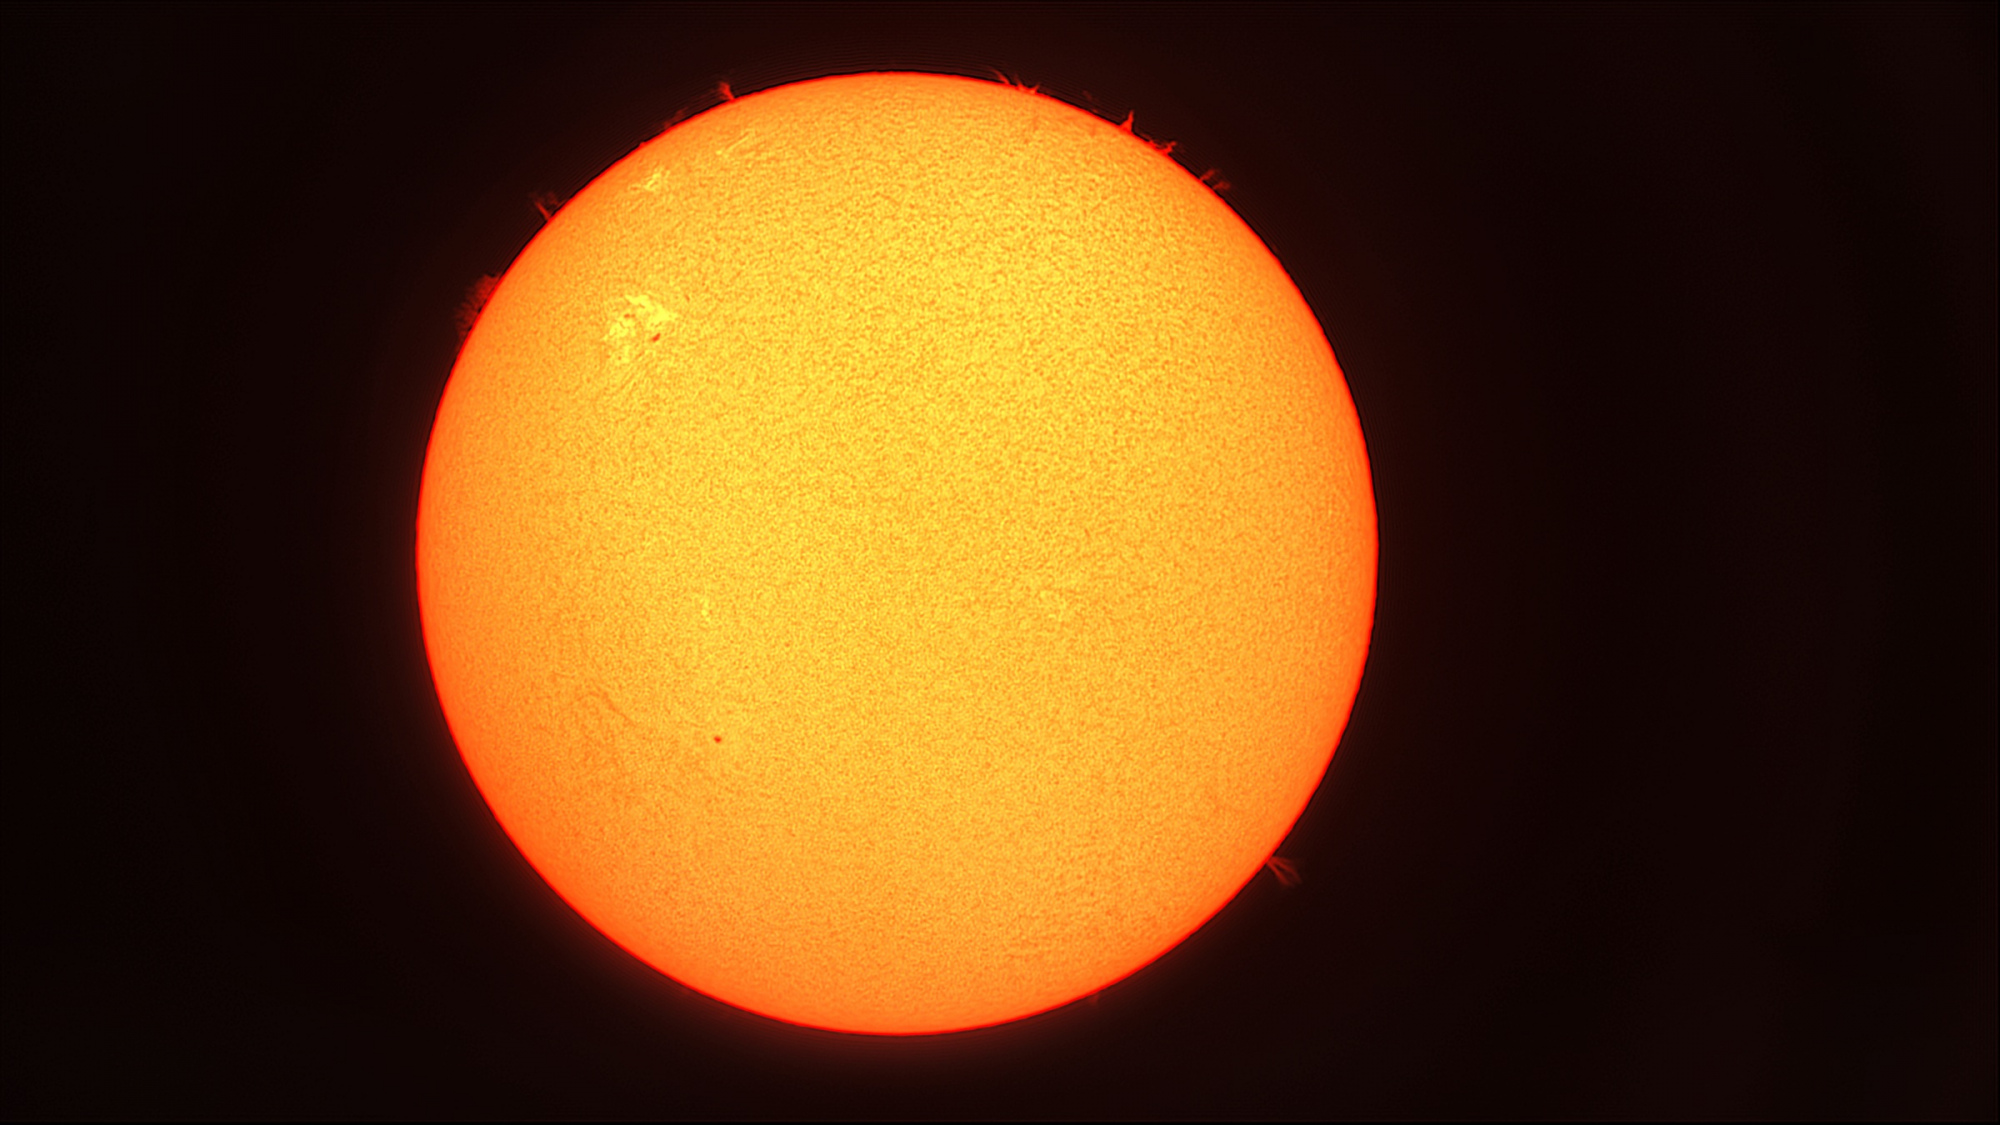 Soleil global lunette 80 mm 25 octobre 2021.jpg